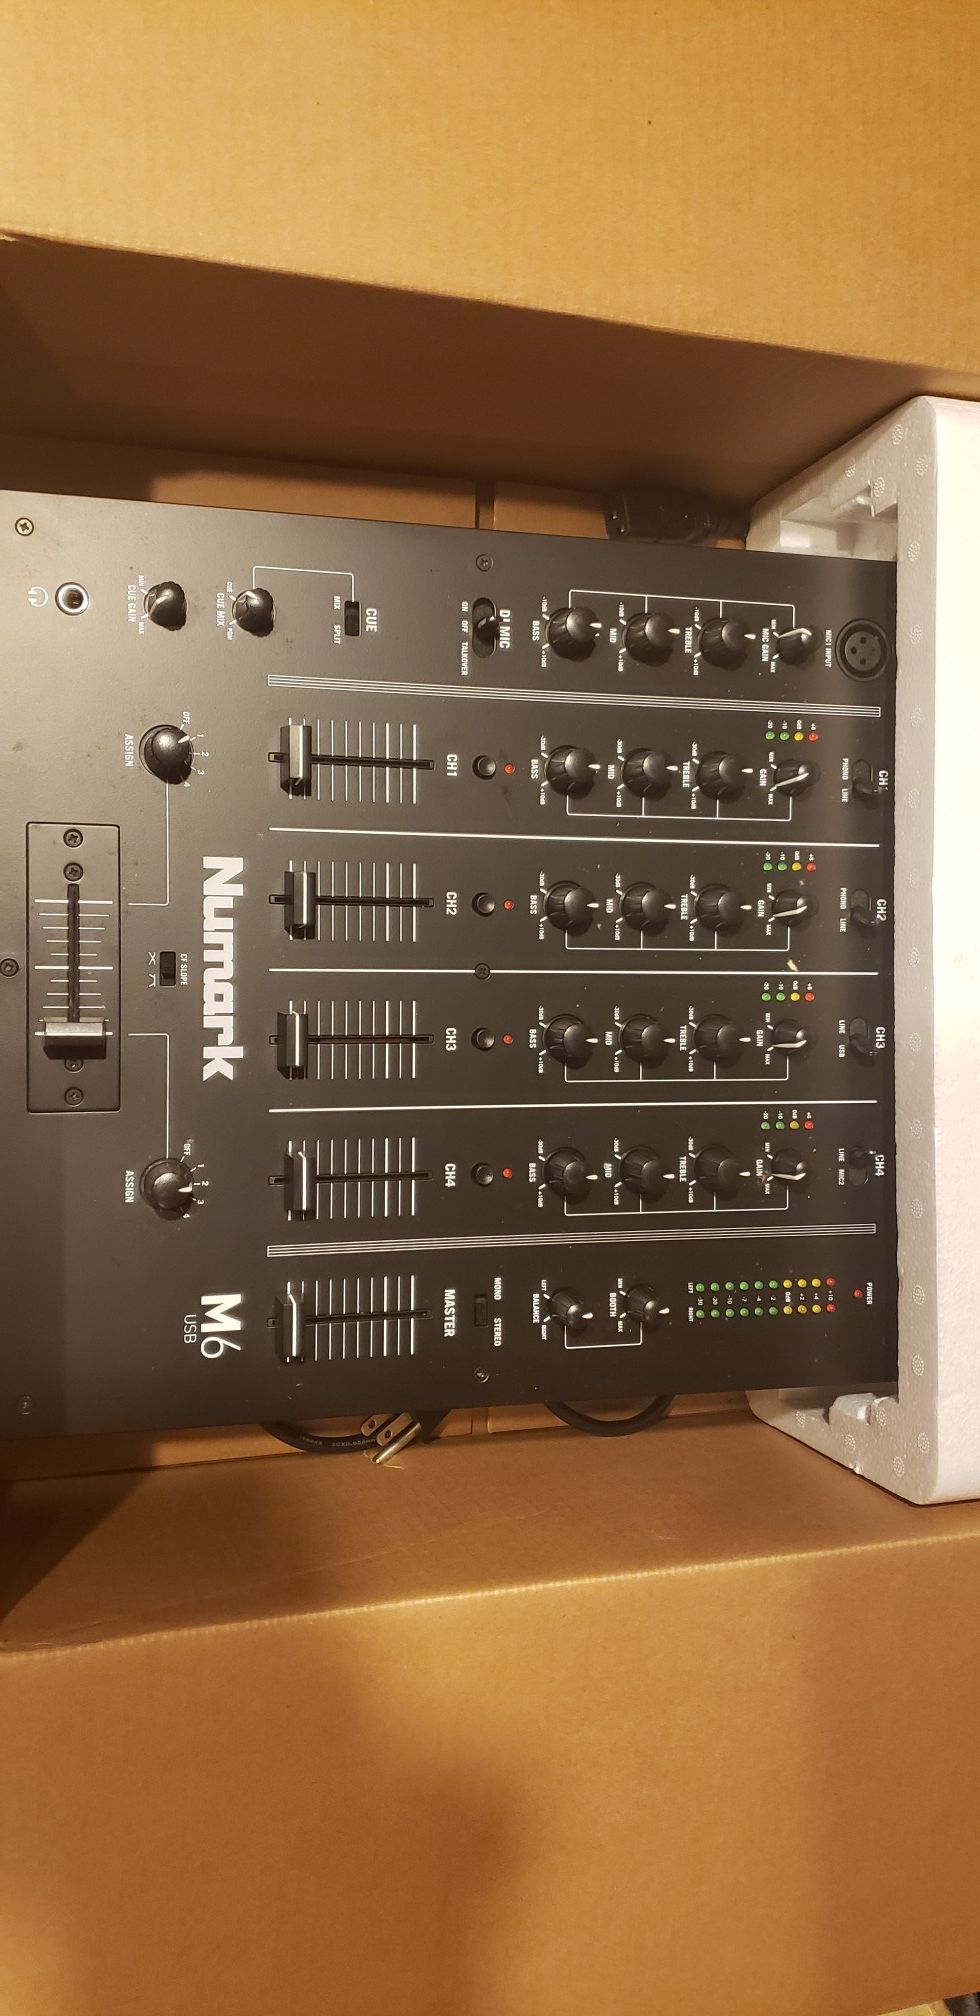 M6 Numark Mixer (DJ equipment)